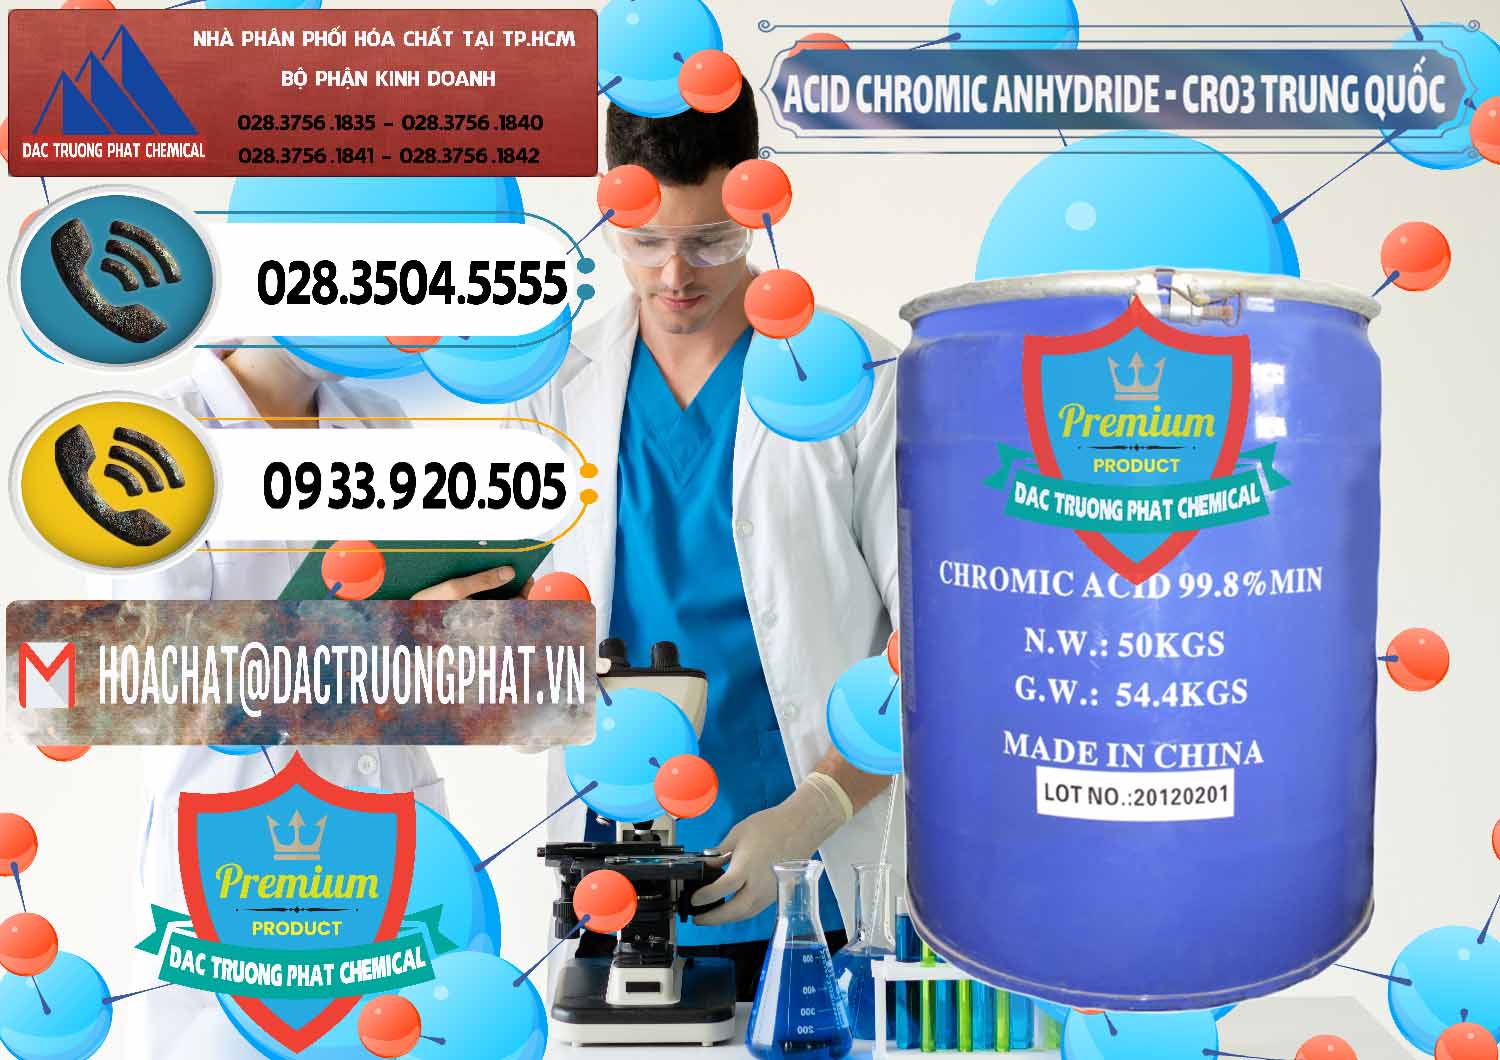 Đơn vị bán - cung ứng Acid Chromic Anhydride - Cromic CRO3 Trung Quốc China - 0007 - Nơi chuyên cung cấp & nhập khẩu hóa chất tại TP.HCM - hoachatdetnhuom.vn